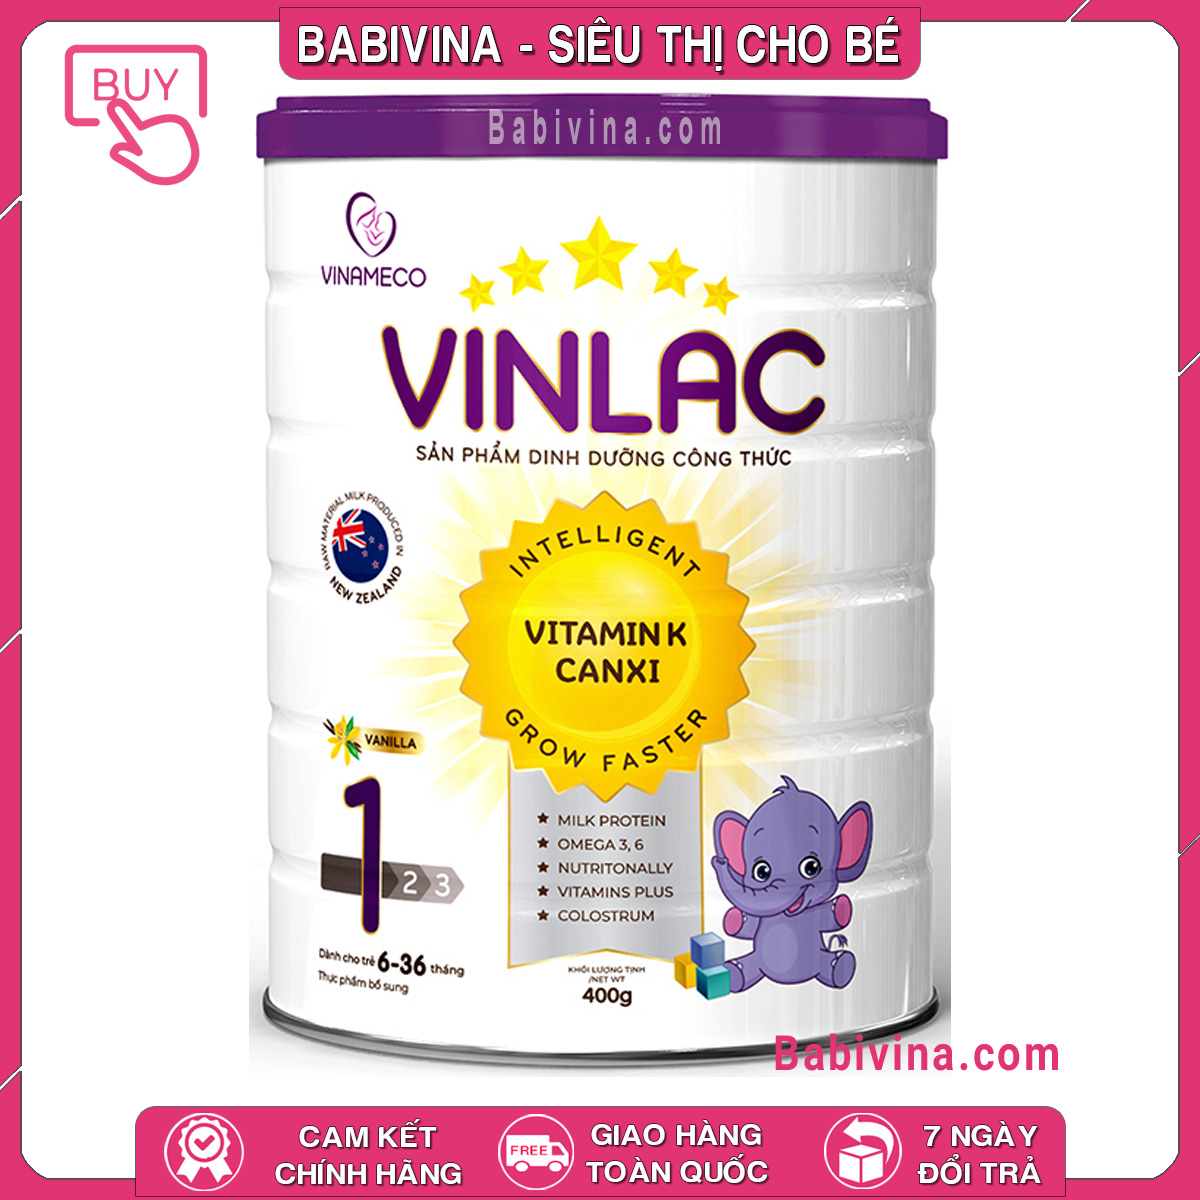 [CHÍNH HÃNG] Sữa Vinlac 1 400g | Dành cho trẻ từ 6-36 tháng tuổi biếng ăn, chậm lớn, thấp còi | Babivina